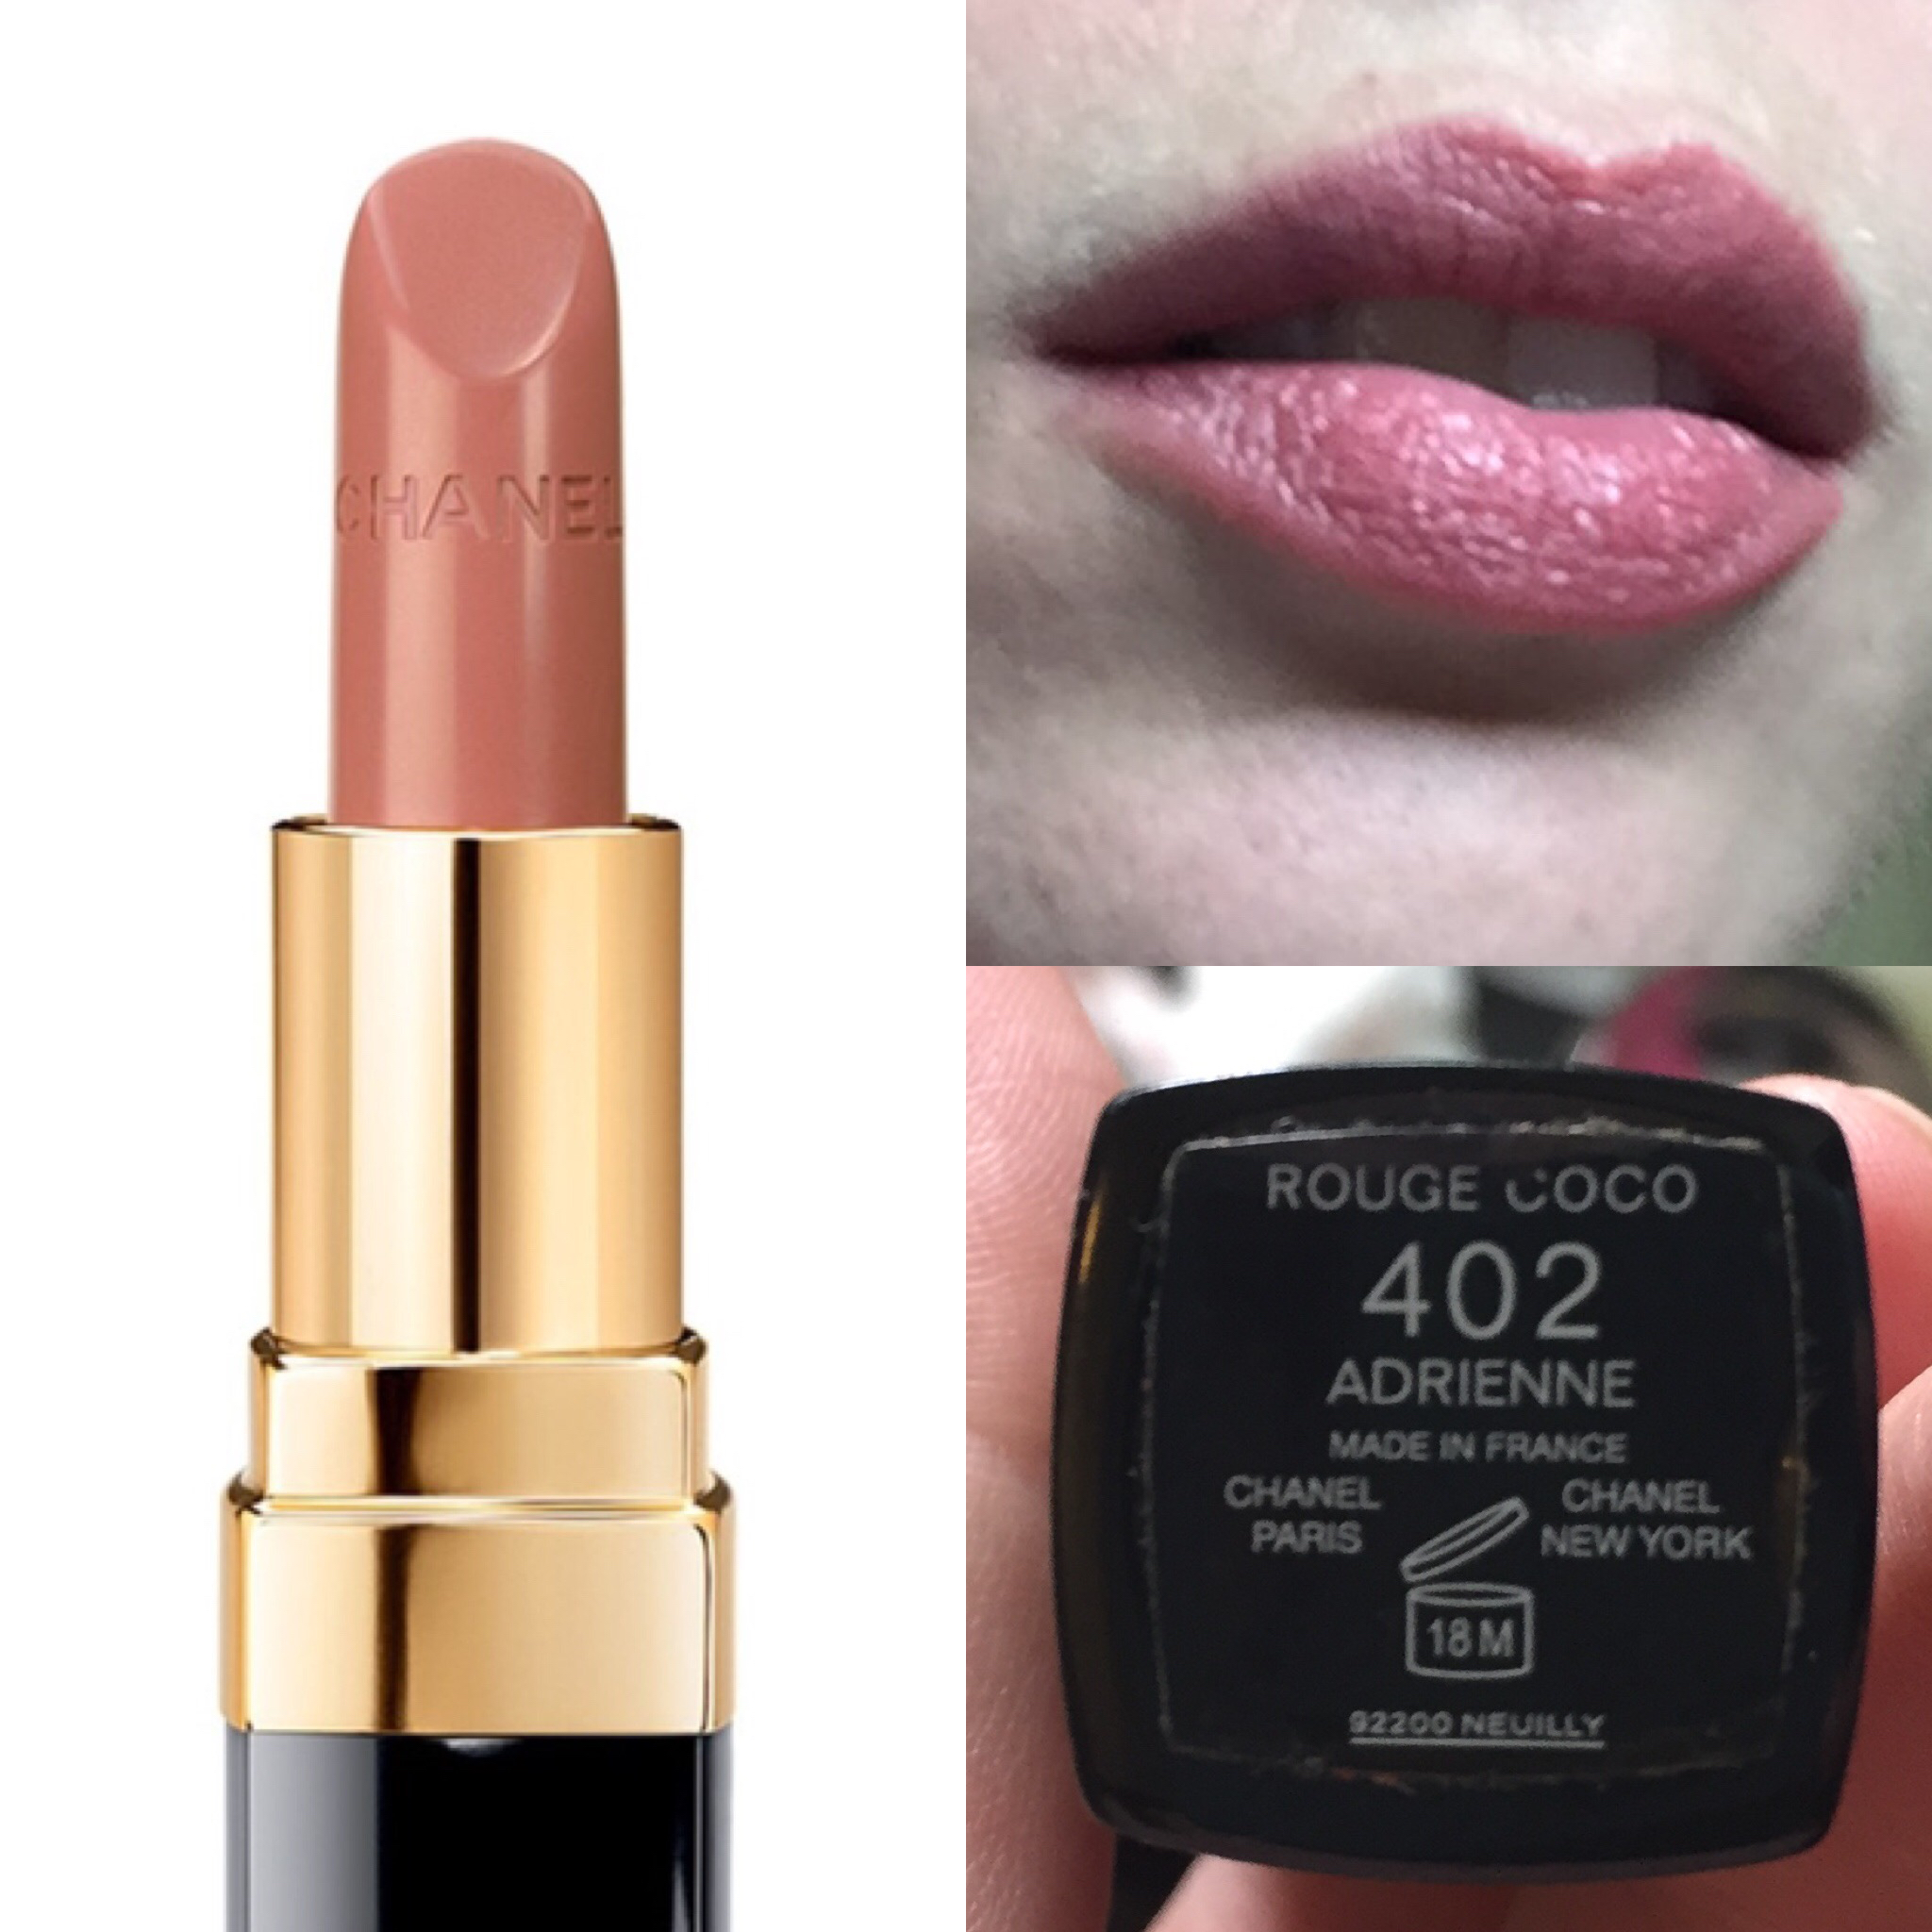 adrienne lipstick chanel